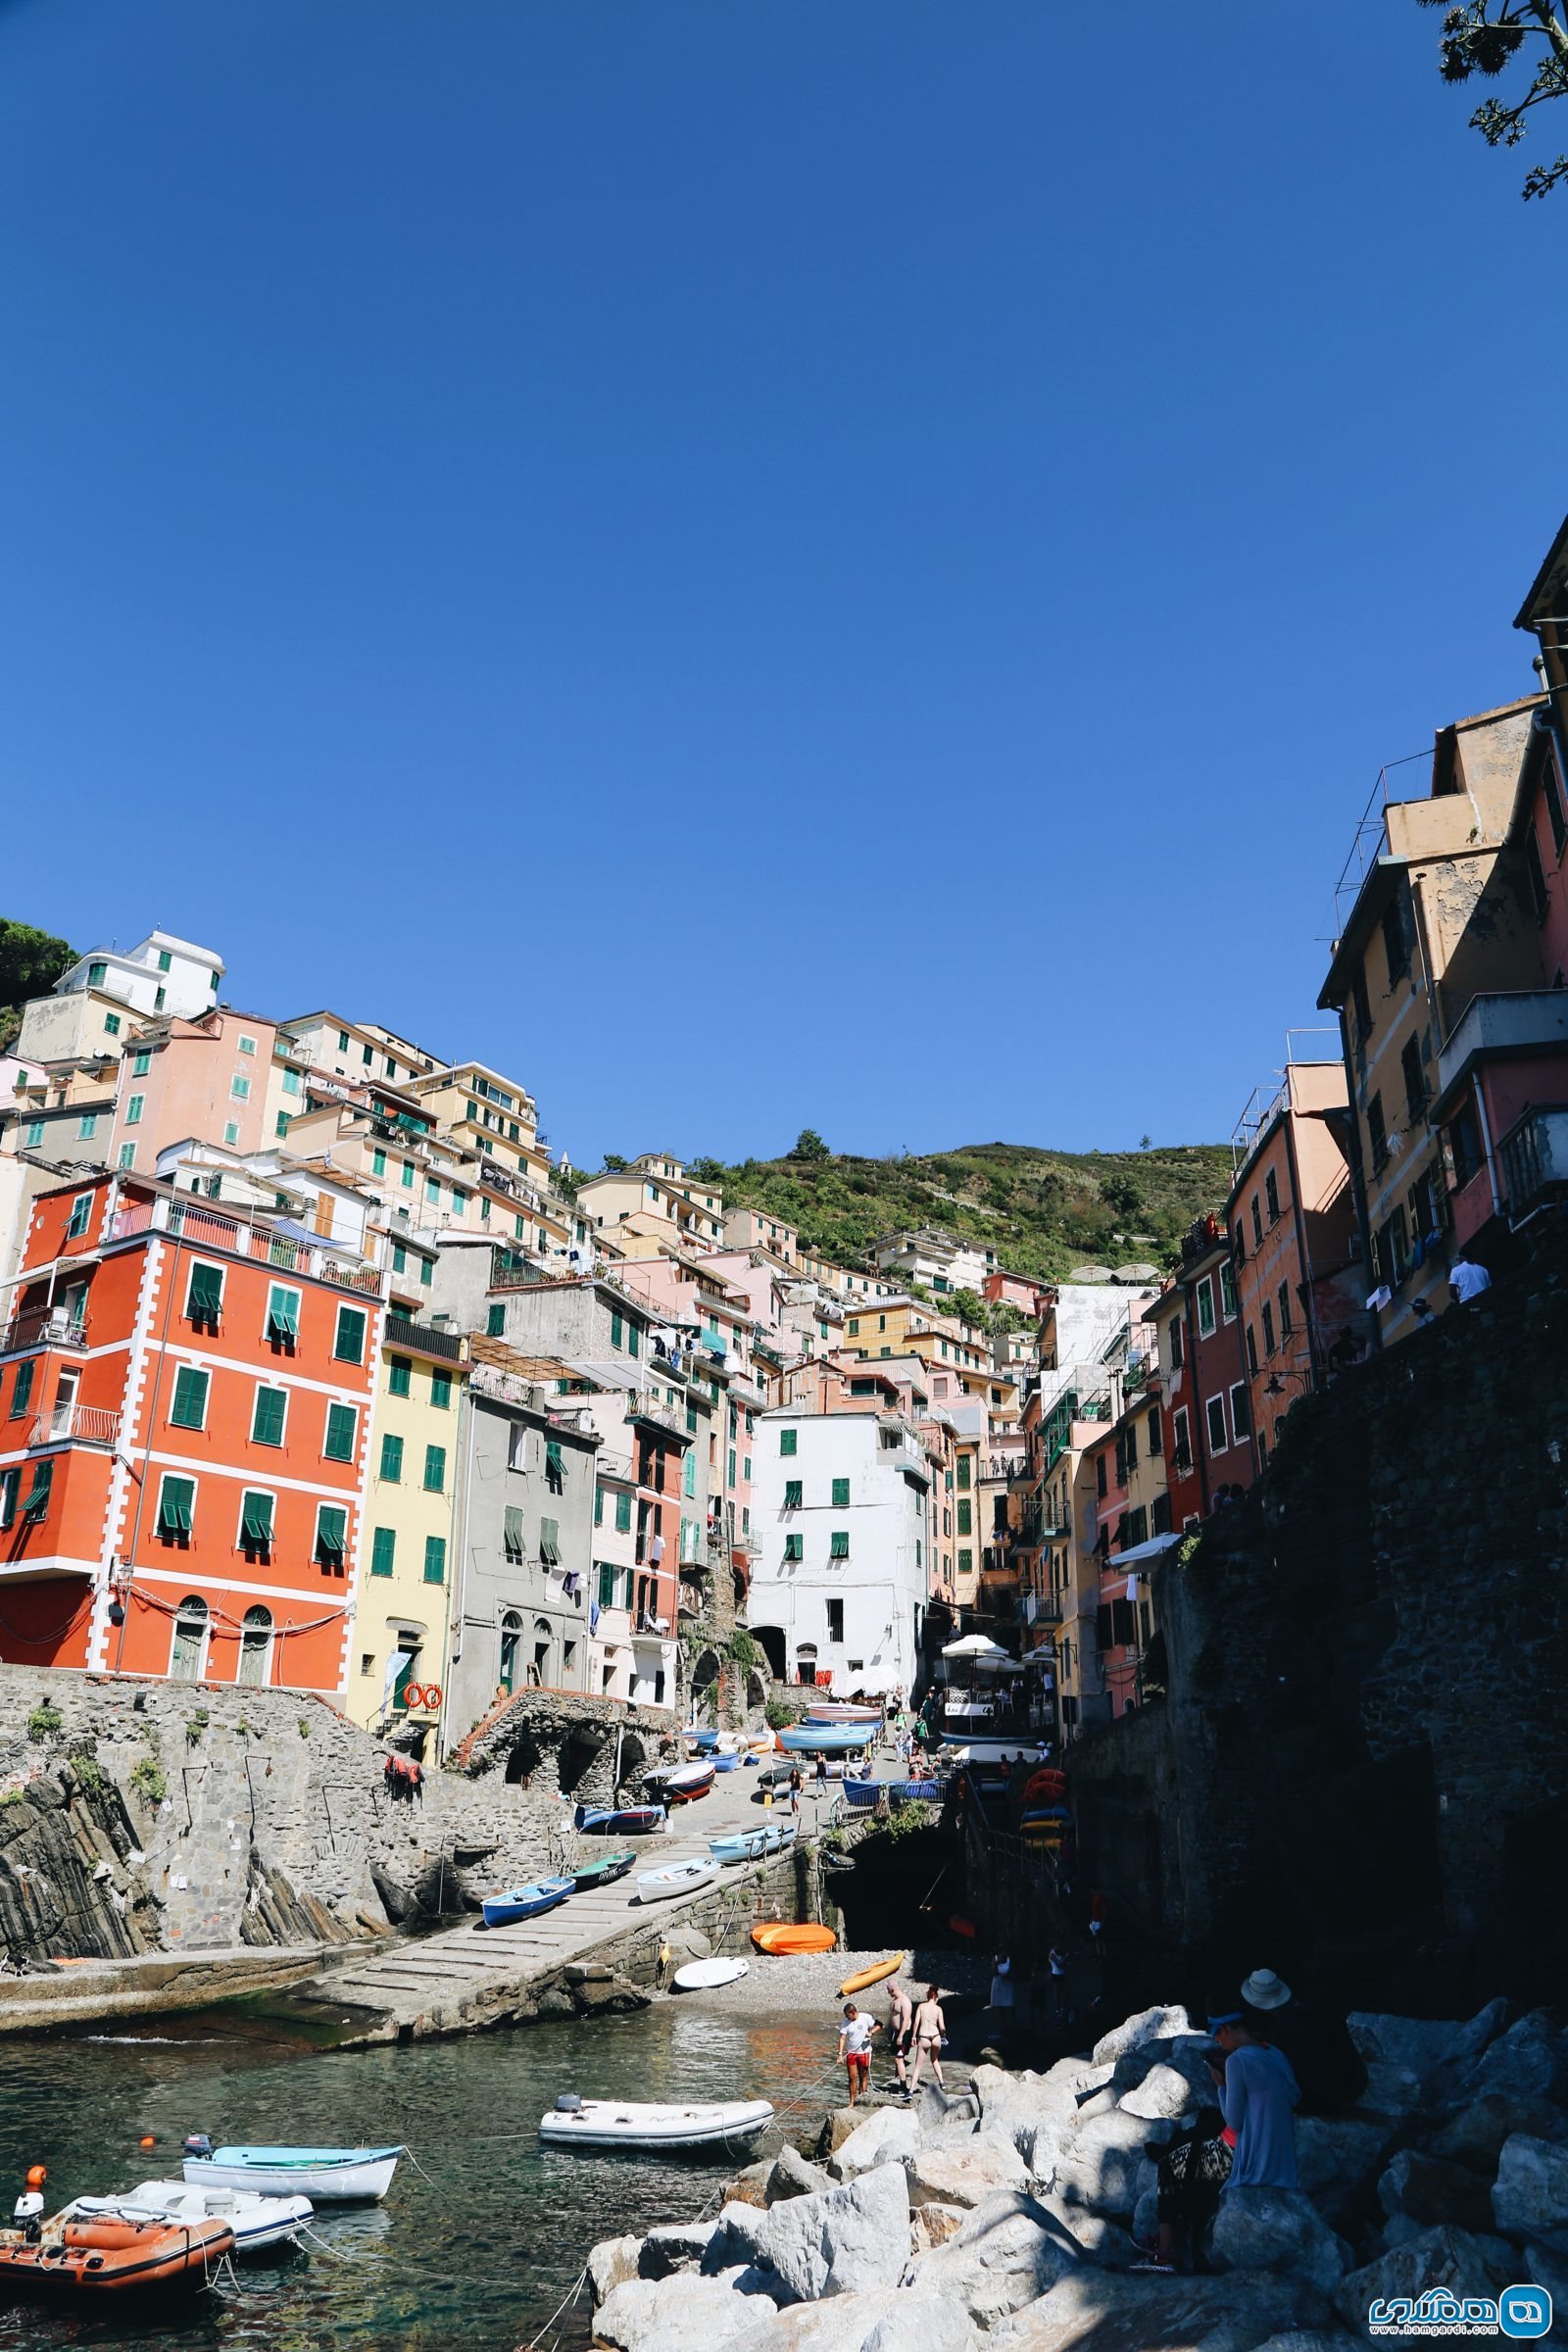 دانستنیهای سفر به ایتالیا | کمی ایتالیایی یاد بگیرید